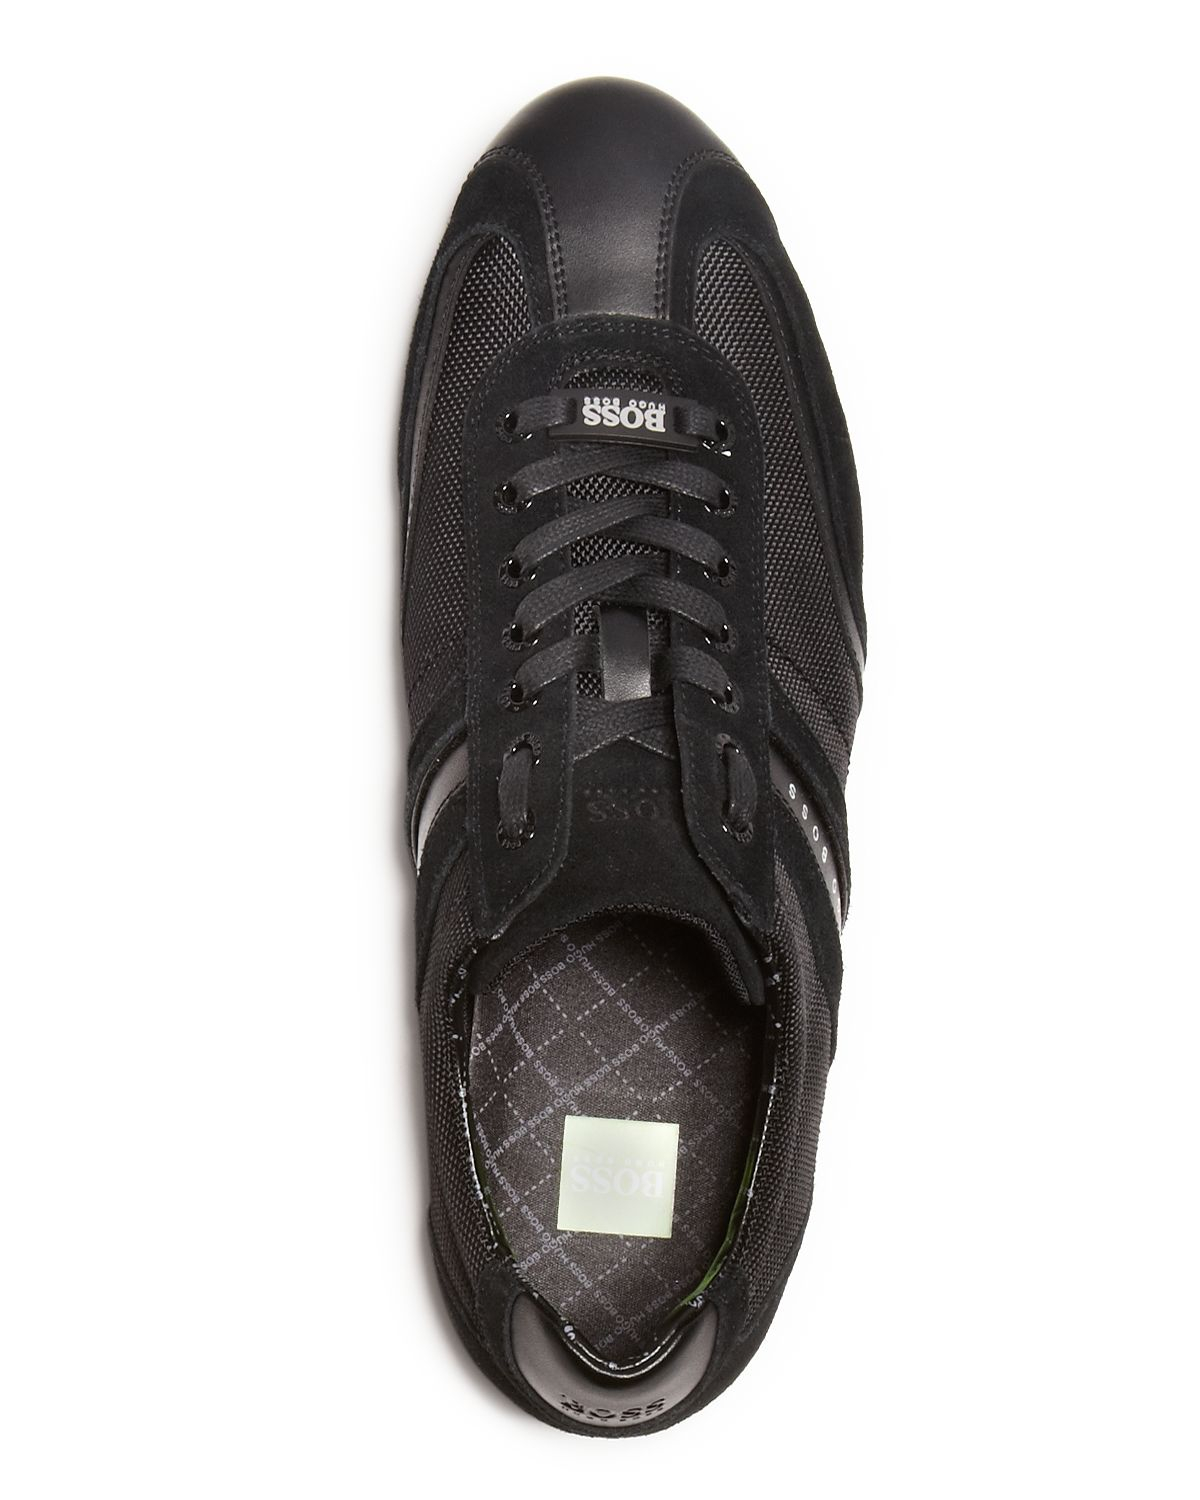 HUGO Boss Boss Stiven Sneakers in Black for Men - Lyst